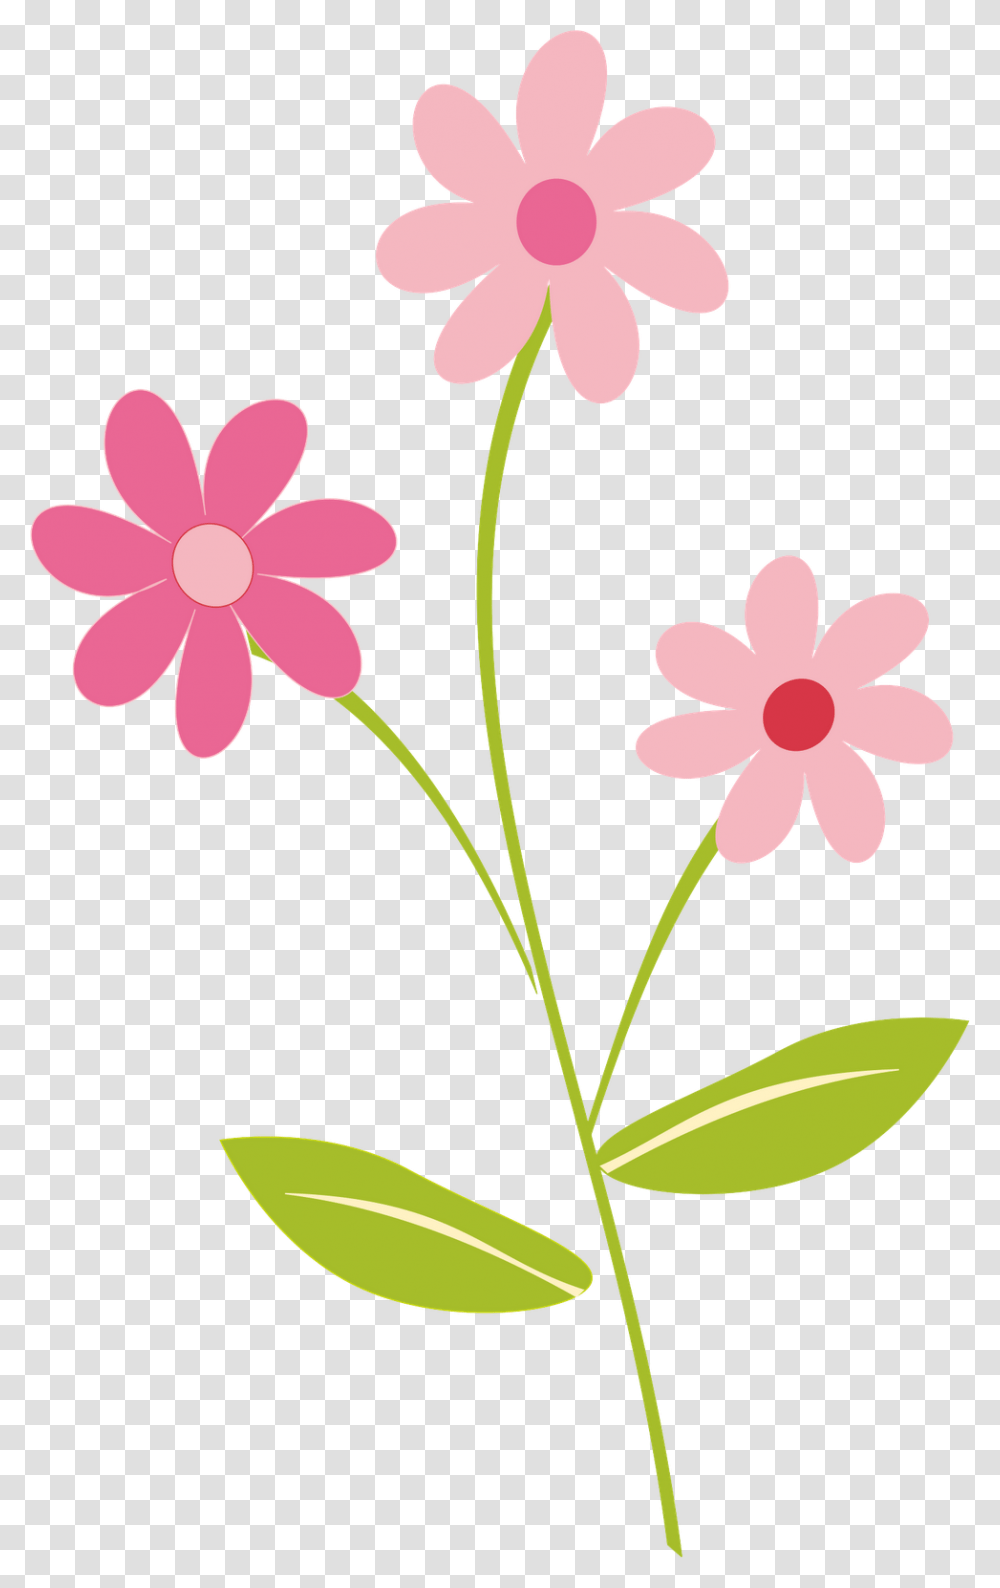 Category Clip Art, Plant, Flower, Petal, Geranium Transparent Png